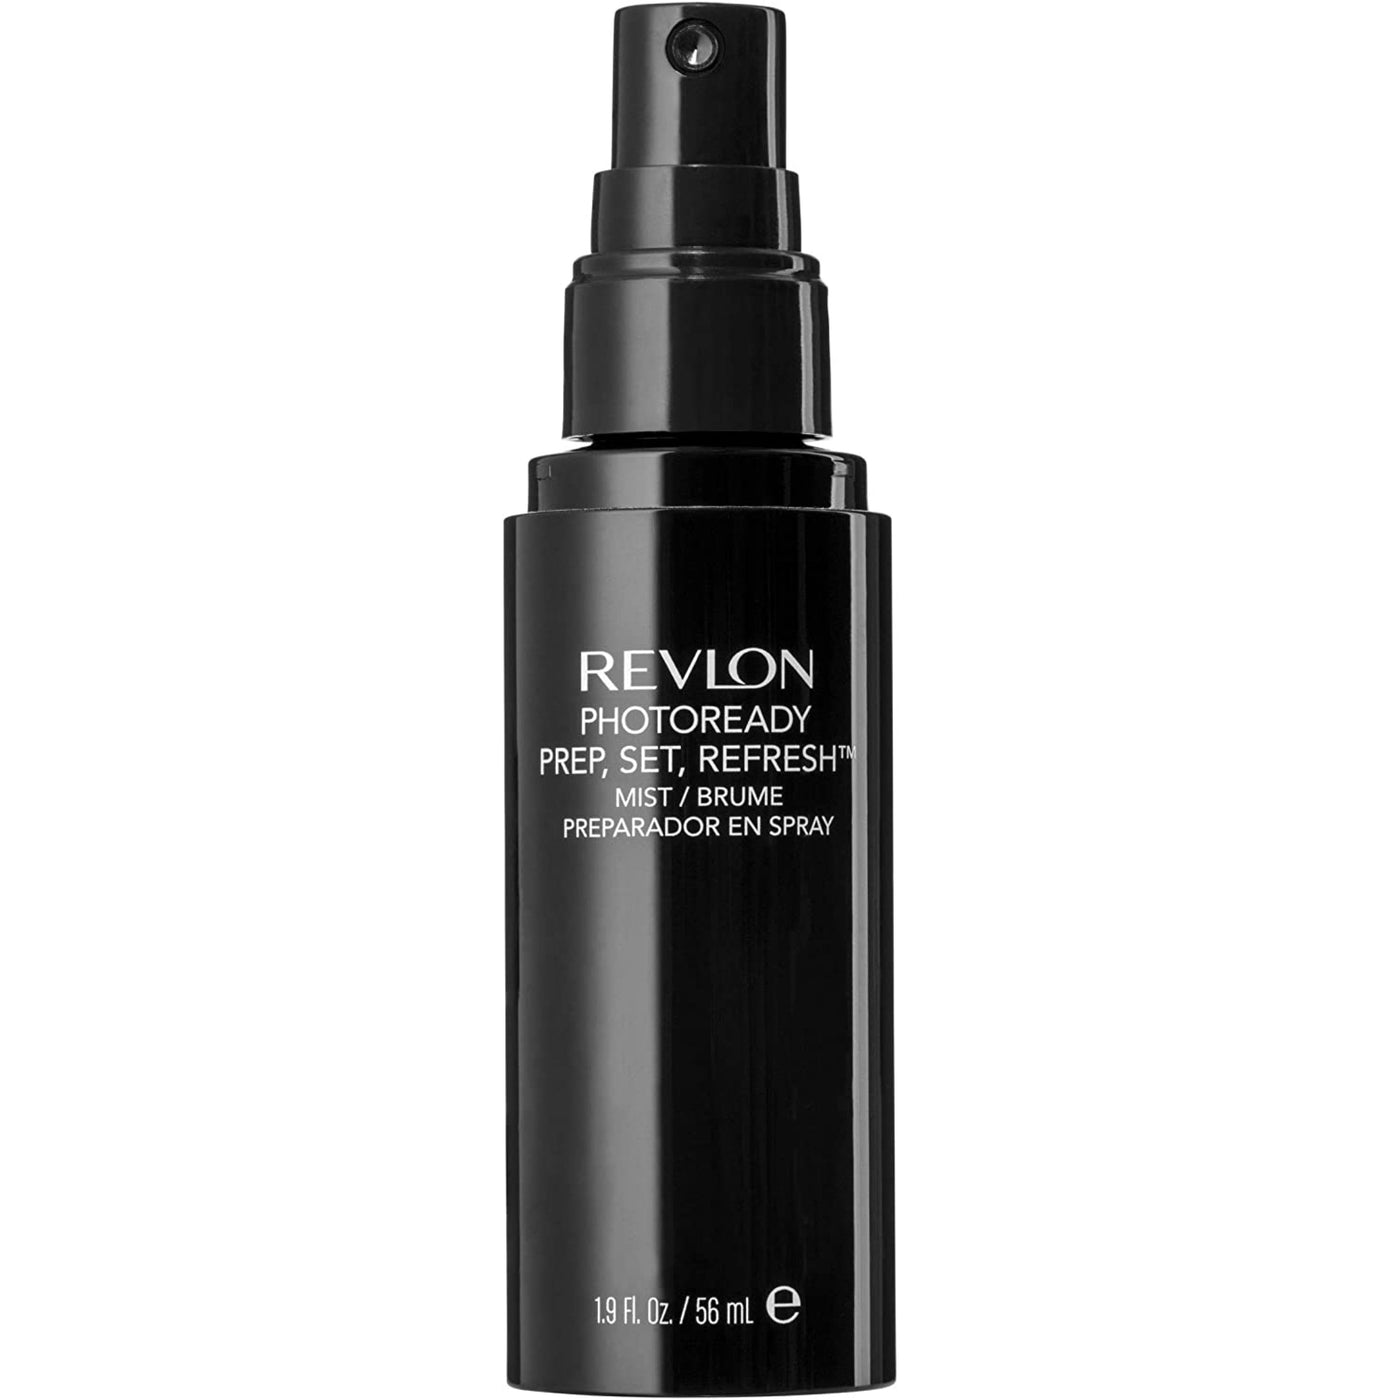 Revlon photoready prime , set refresh spray